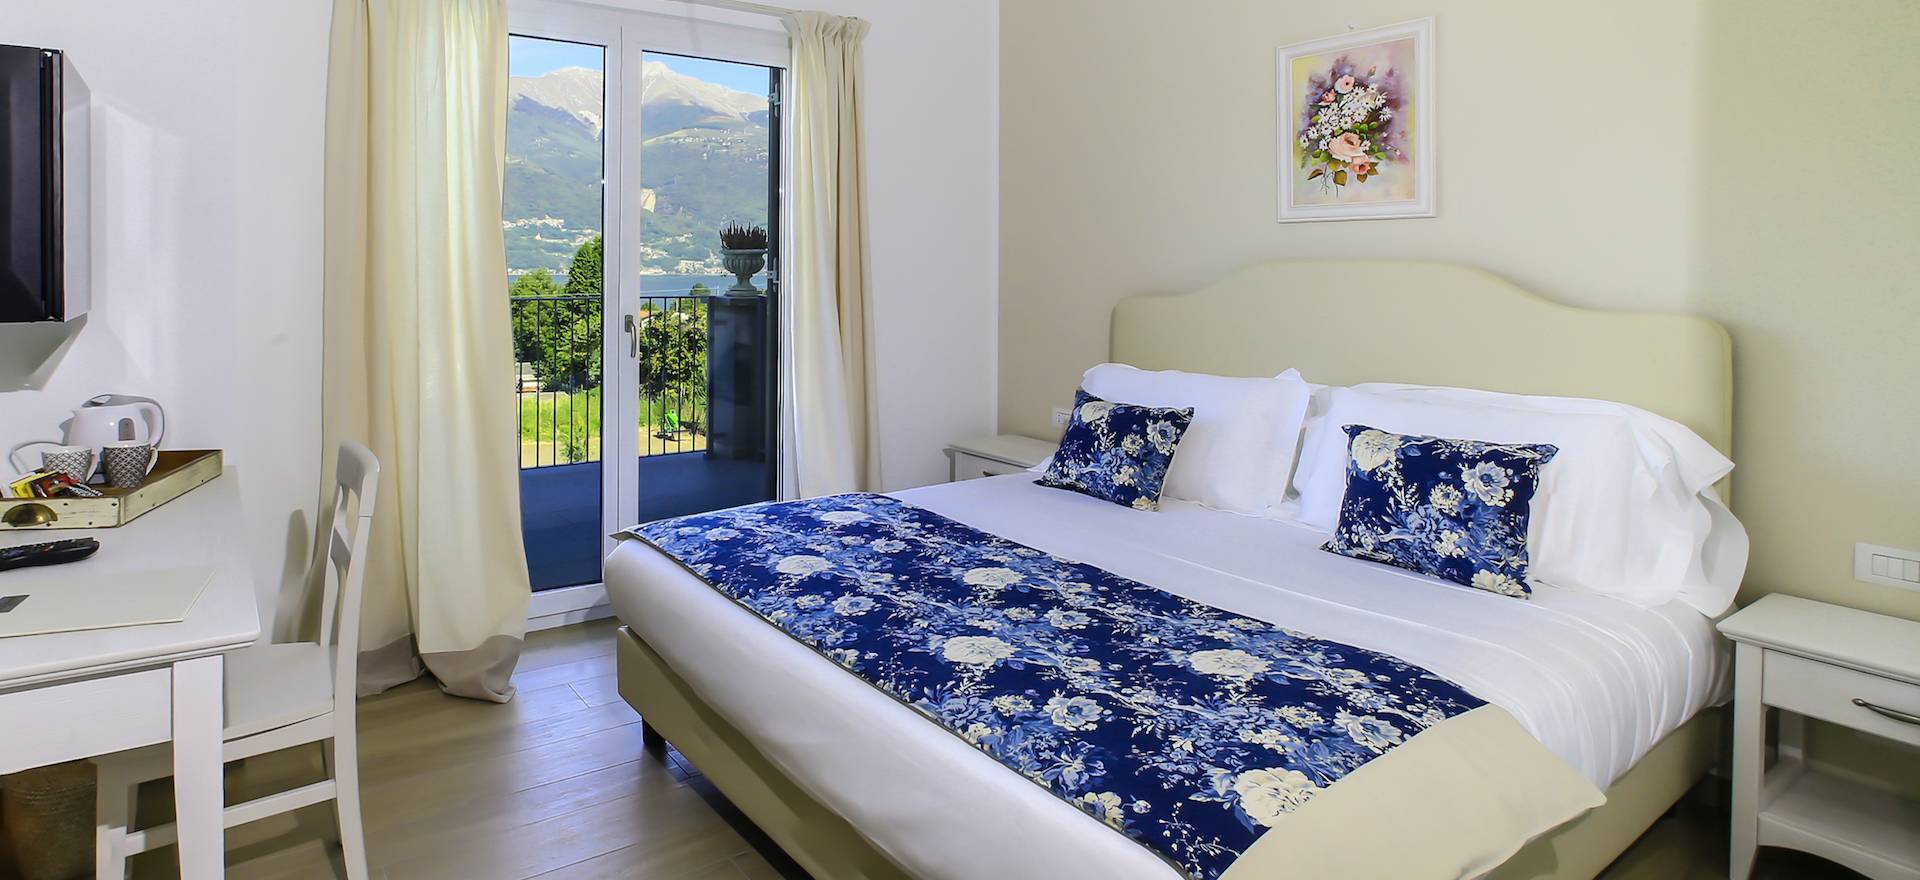 Agriturismo Lake Como and Lake Garda Luxury B&B within walking distance of Lake Como